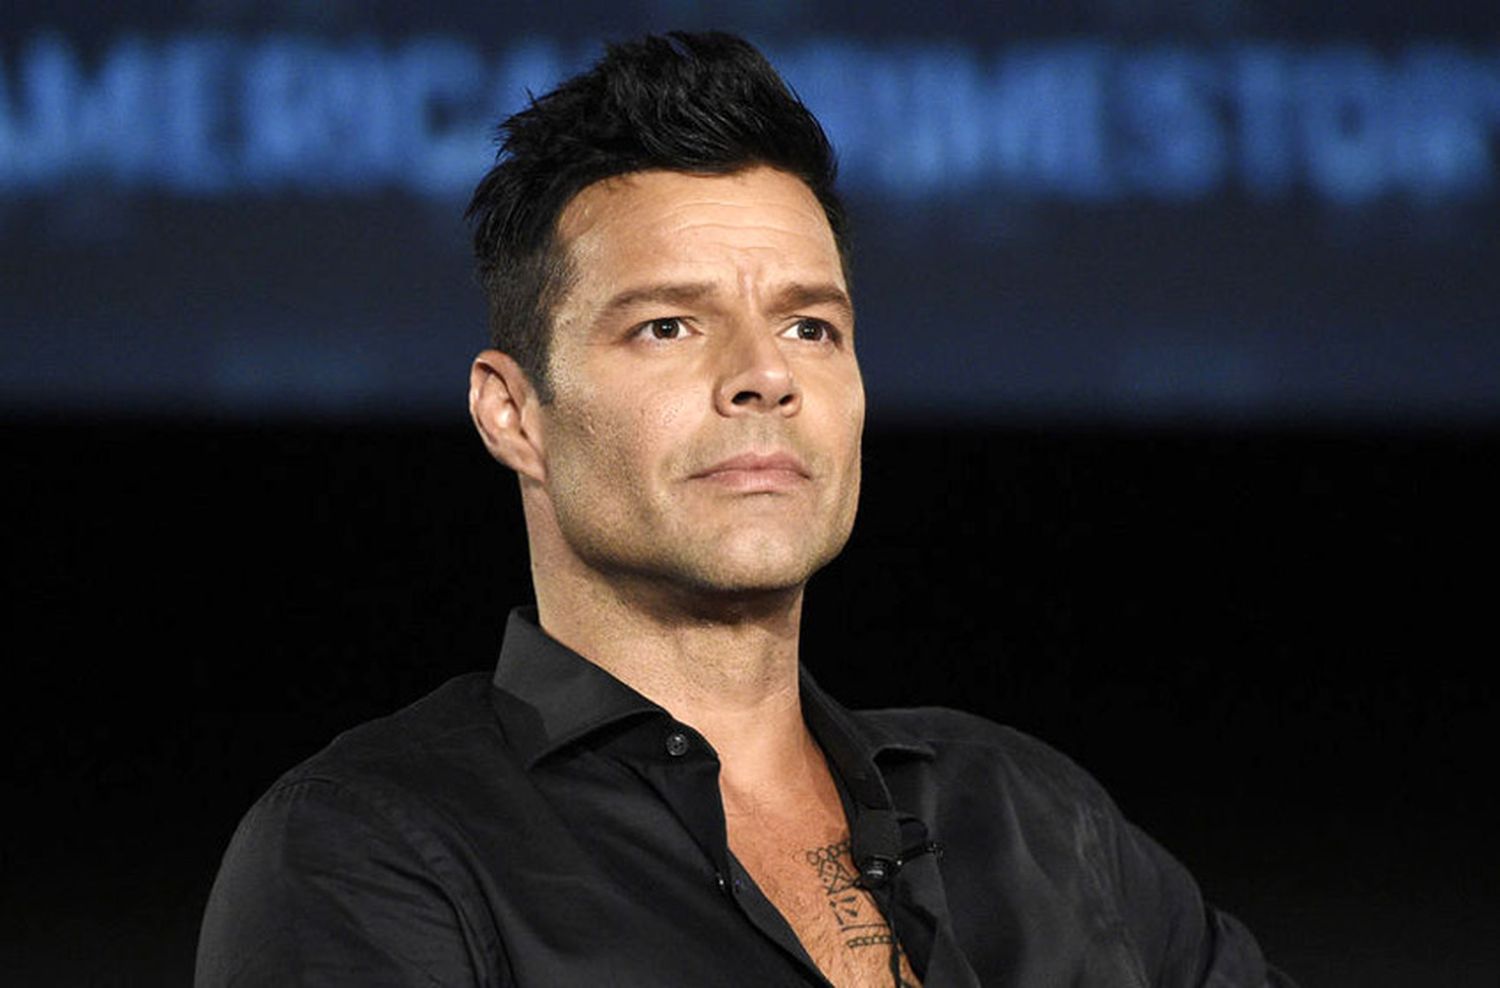 La sensual imagen de Ricky Martin que hizo explotar las redes